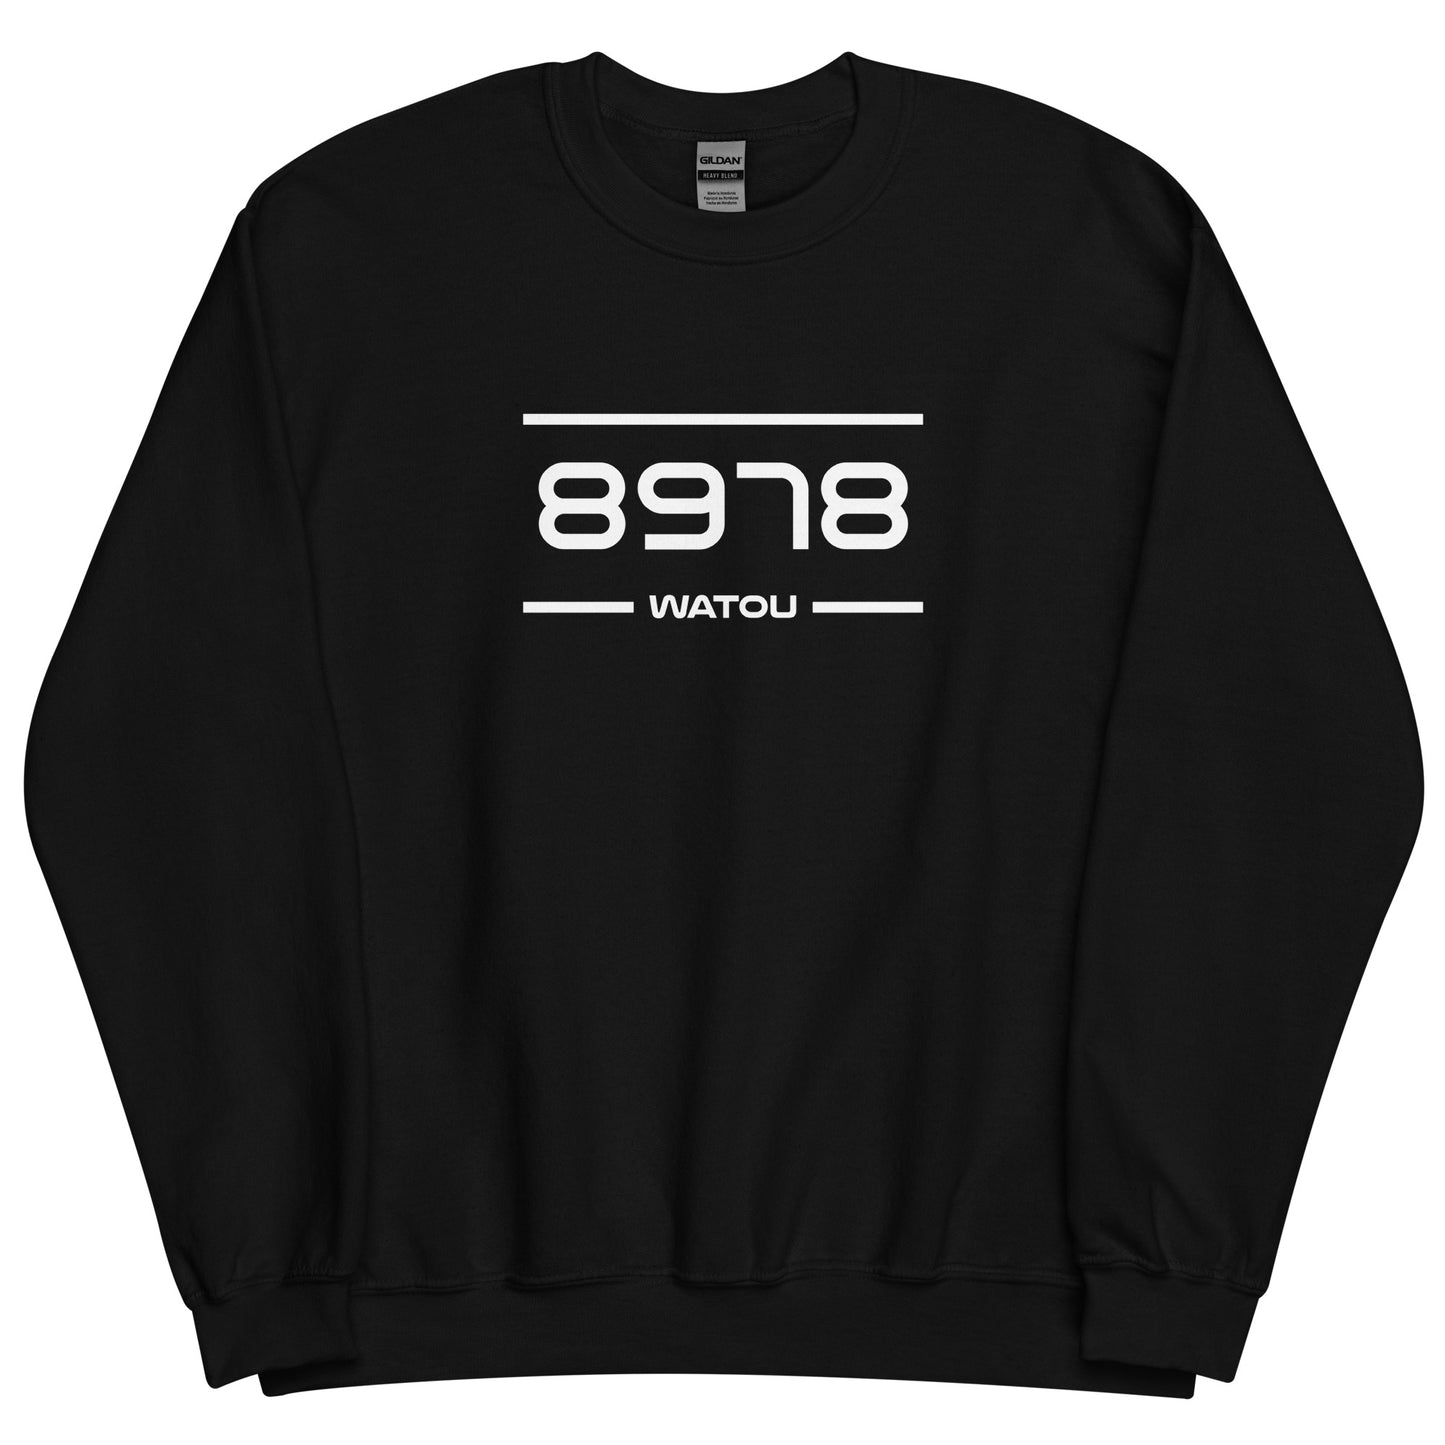 Sweater - 8978 - Watou (M/V)